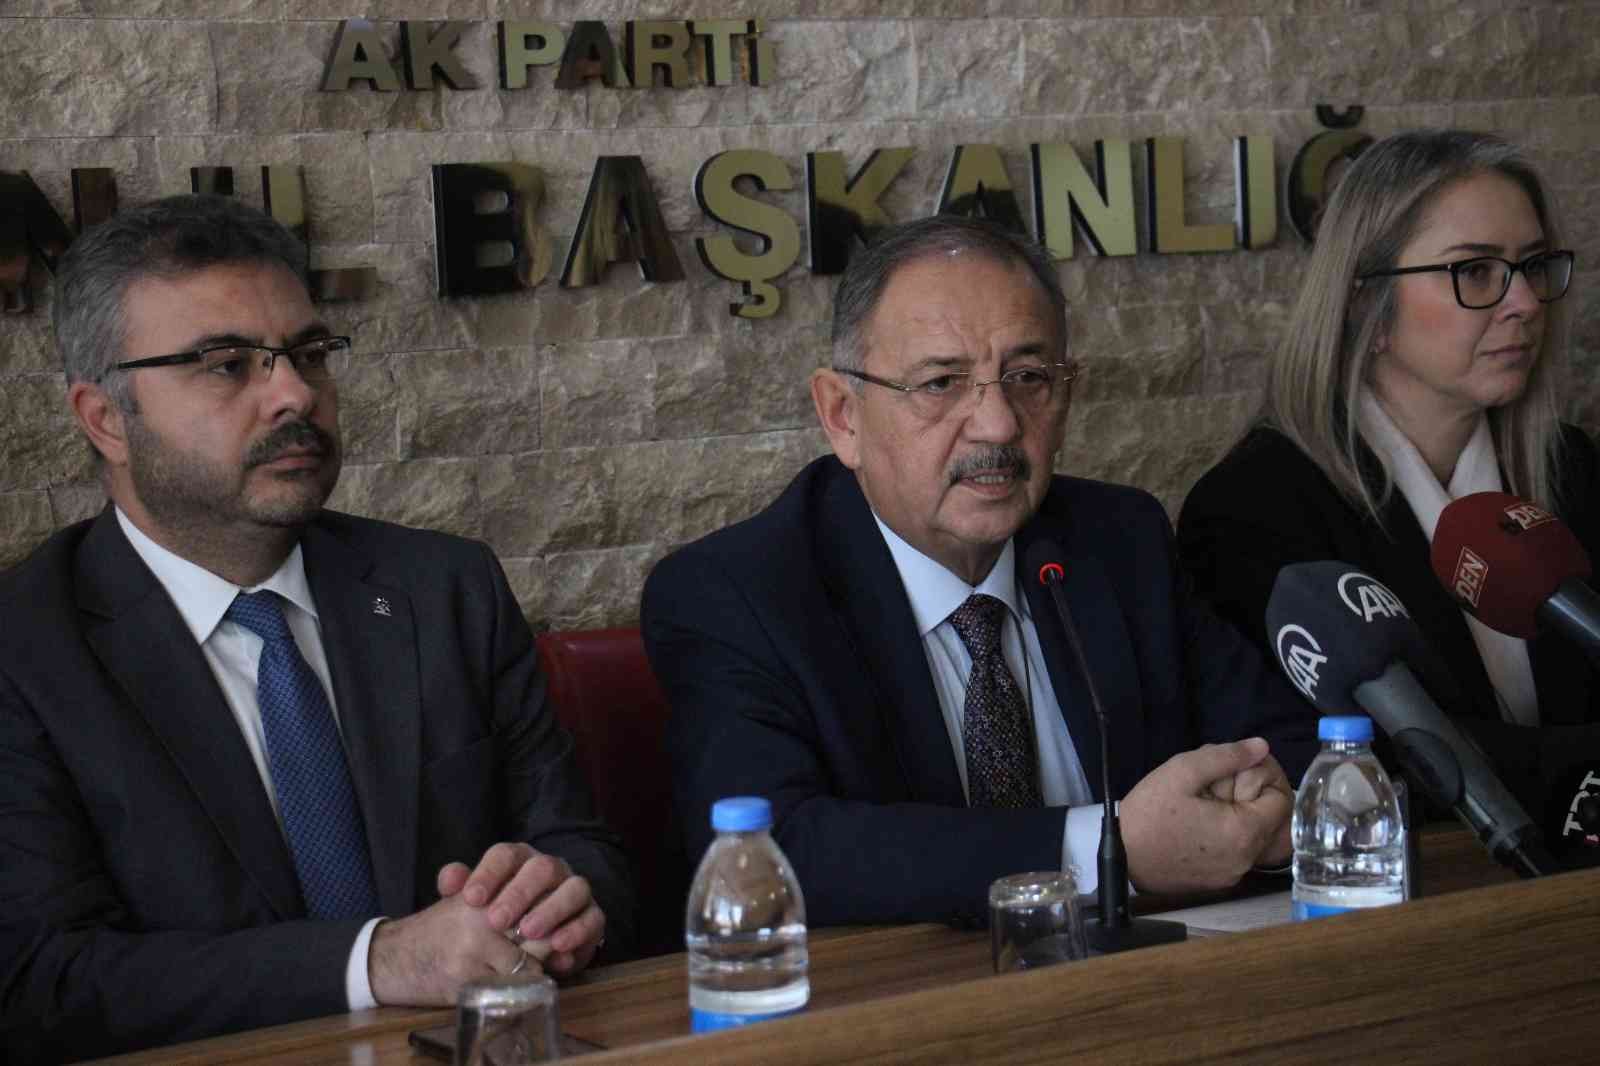 AK Parti Genel Başkan Yardımcısı Özhaseki: “AK Parti Türkiye’de devrim niteliğinde işler yaptı”